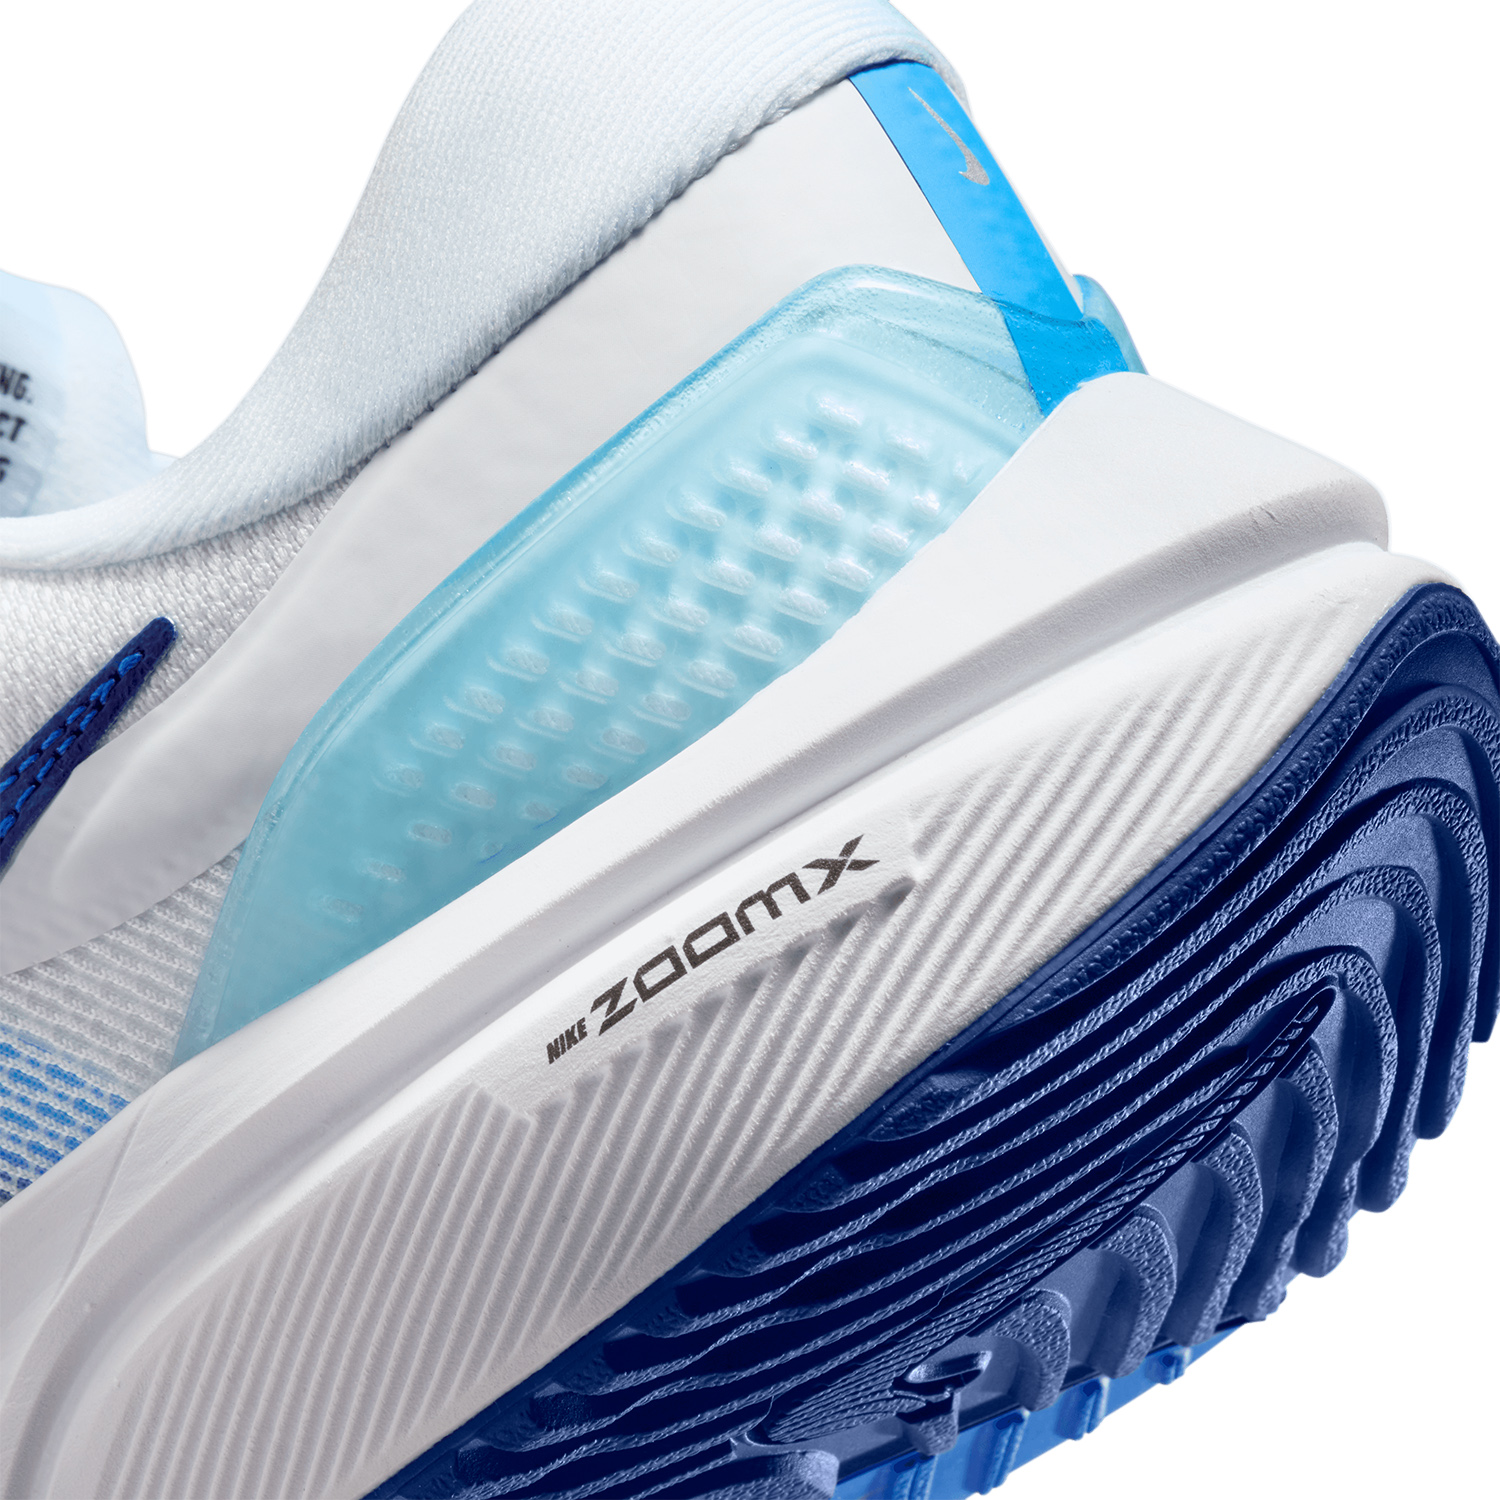 Nike Air Zoom Vomero 16 Premium Men's Running Shoes - White